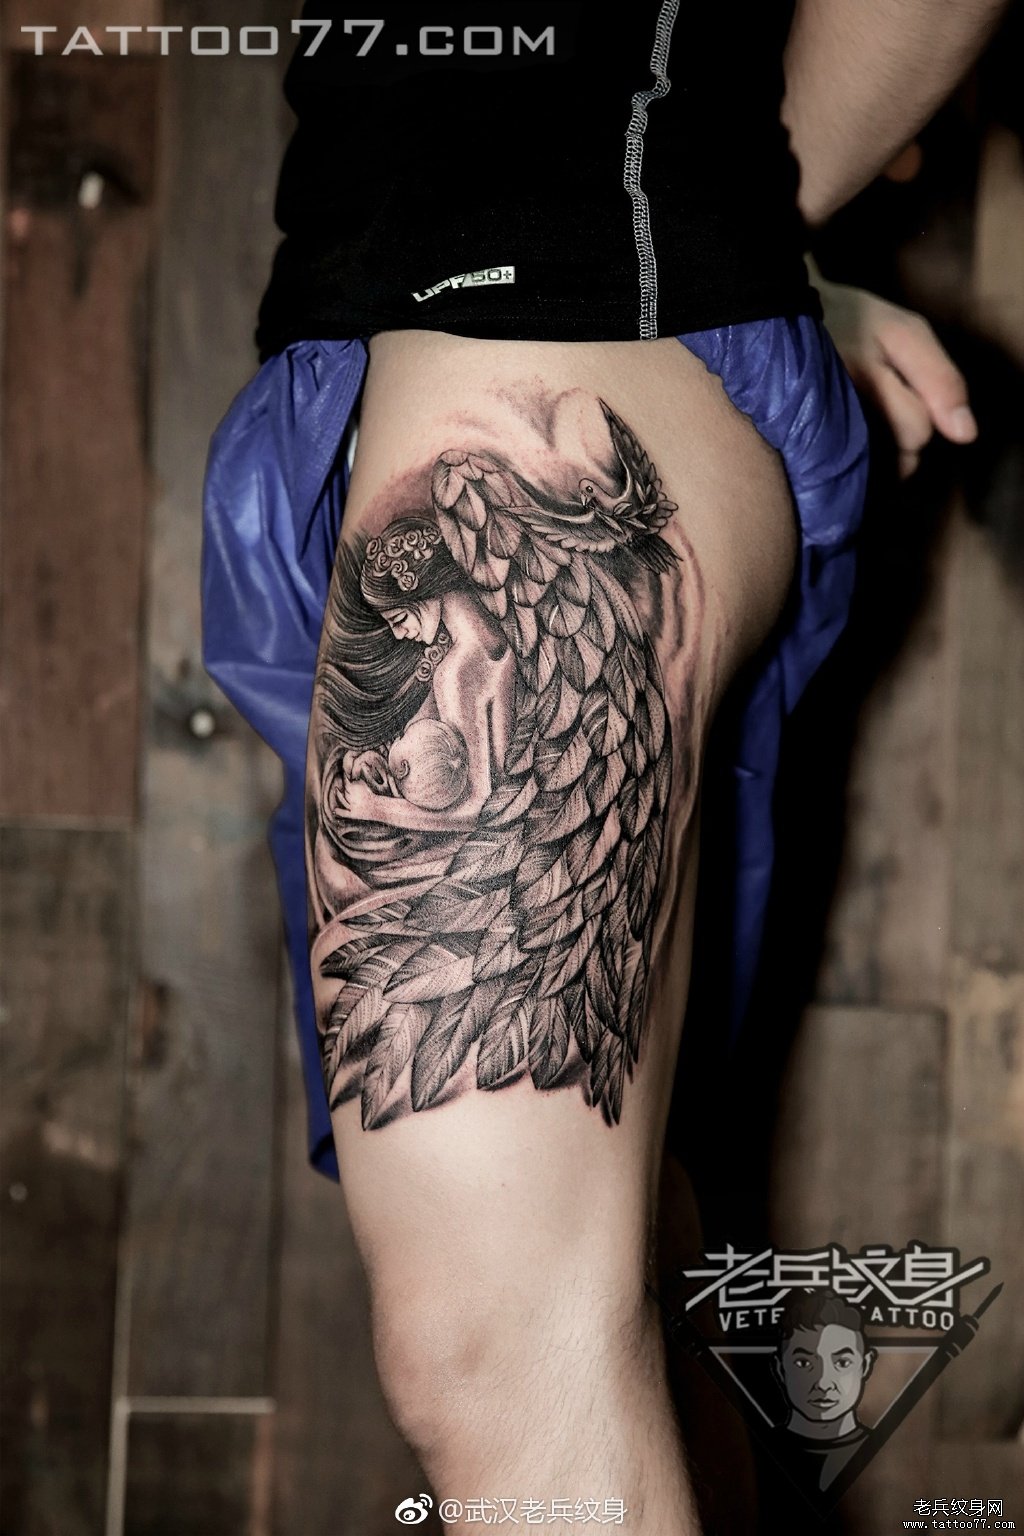 兵哥打造的大腿天使纹身图案作品